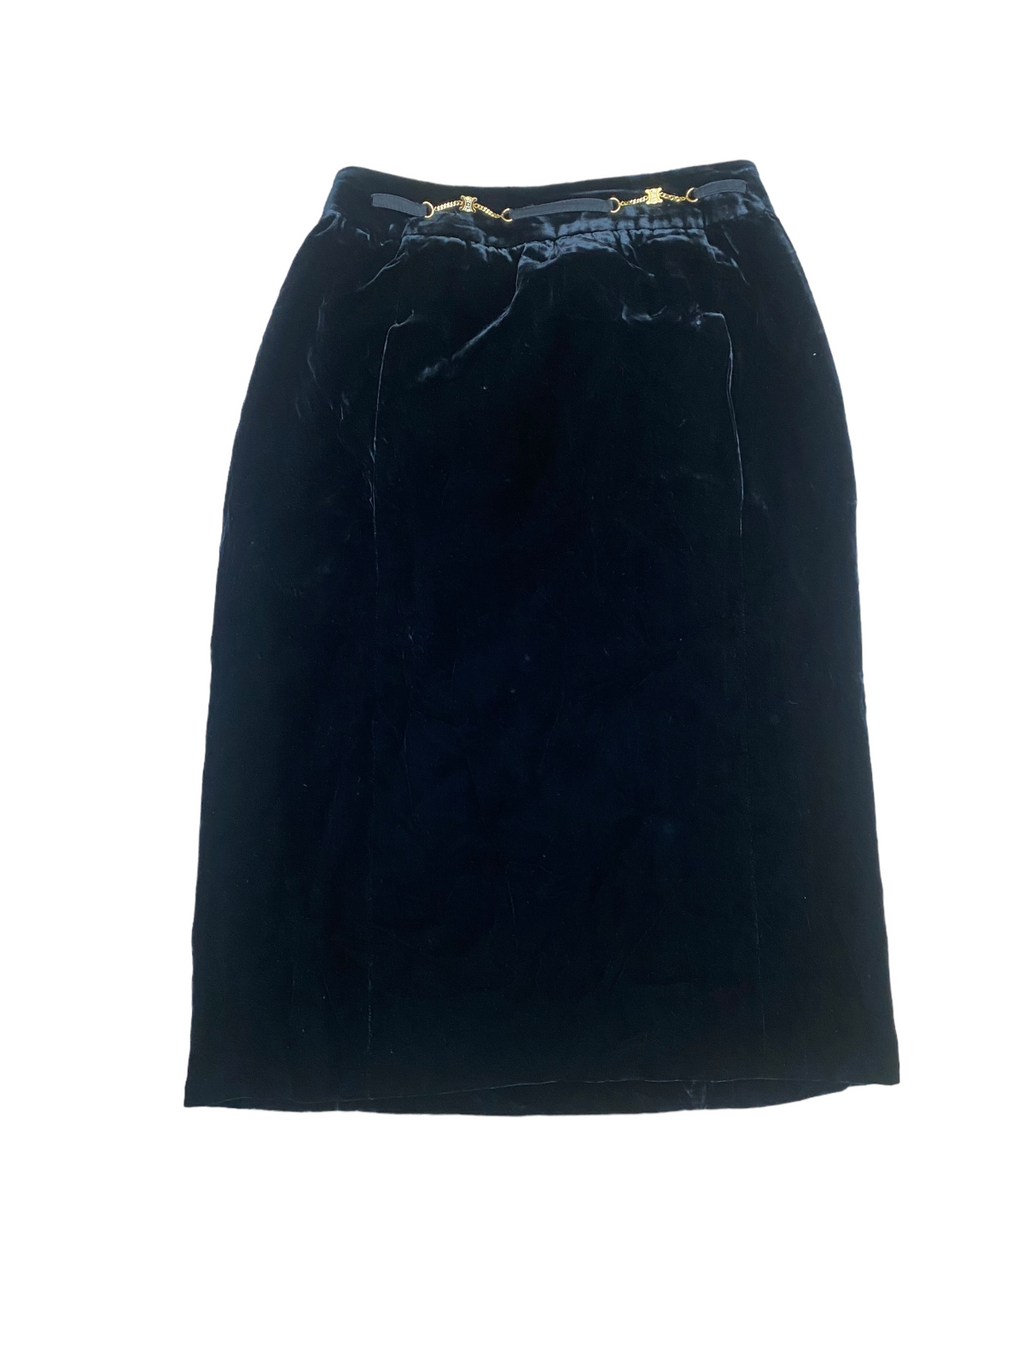 Vintage Black Velvet Corduroy Skirt